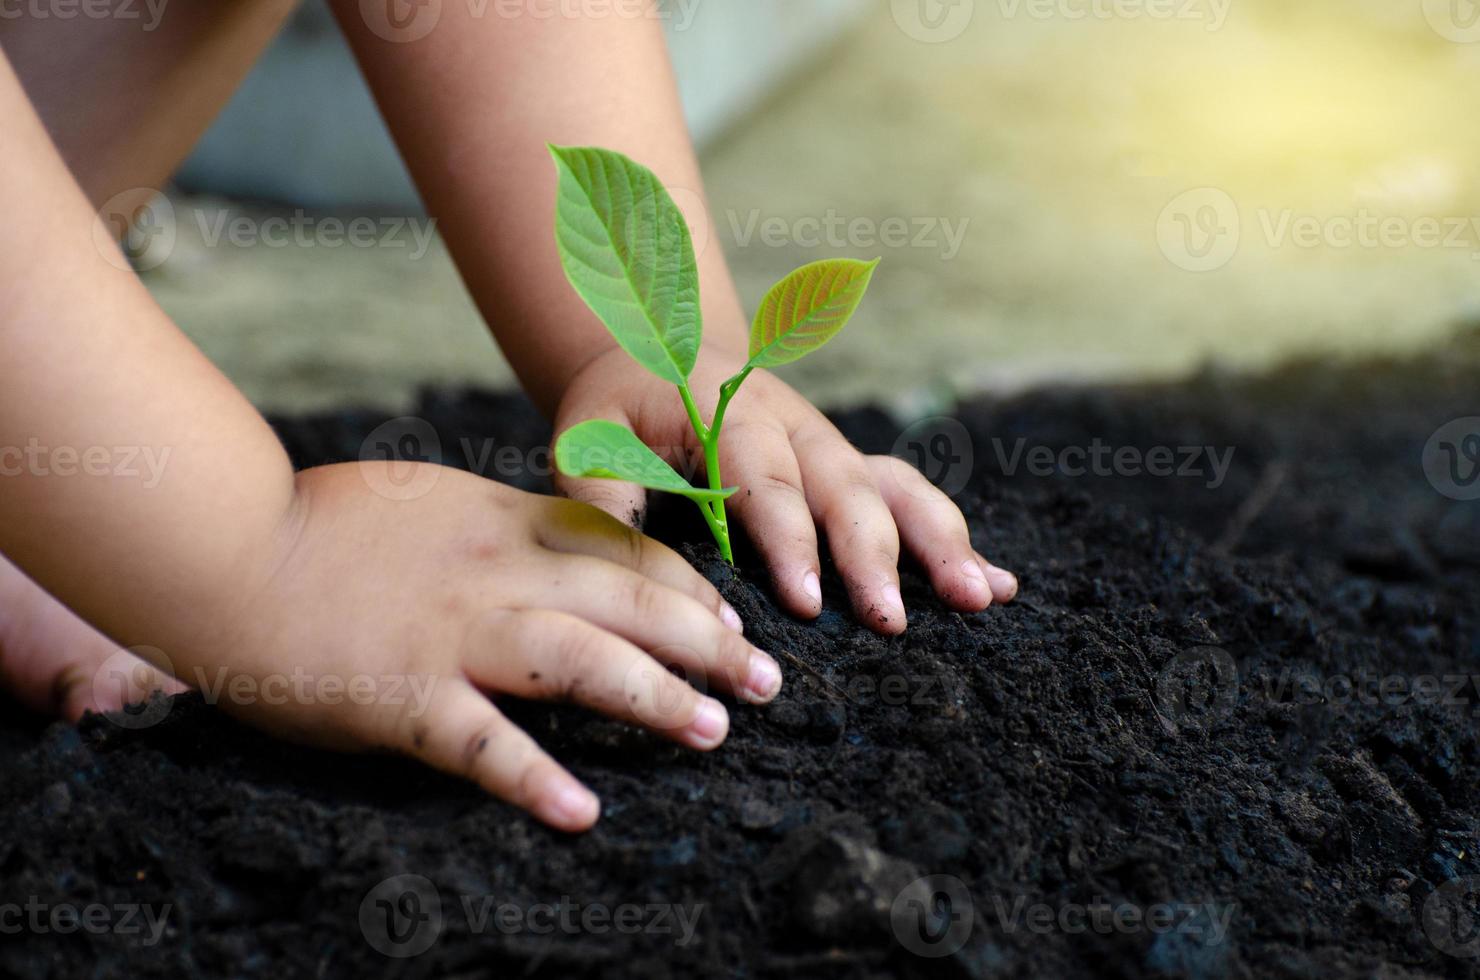 trädplanta unga hand på den mörka marken, implanterade konceptet barns medvetande i miljön foto